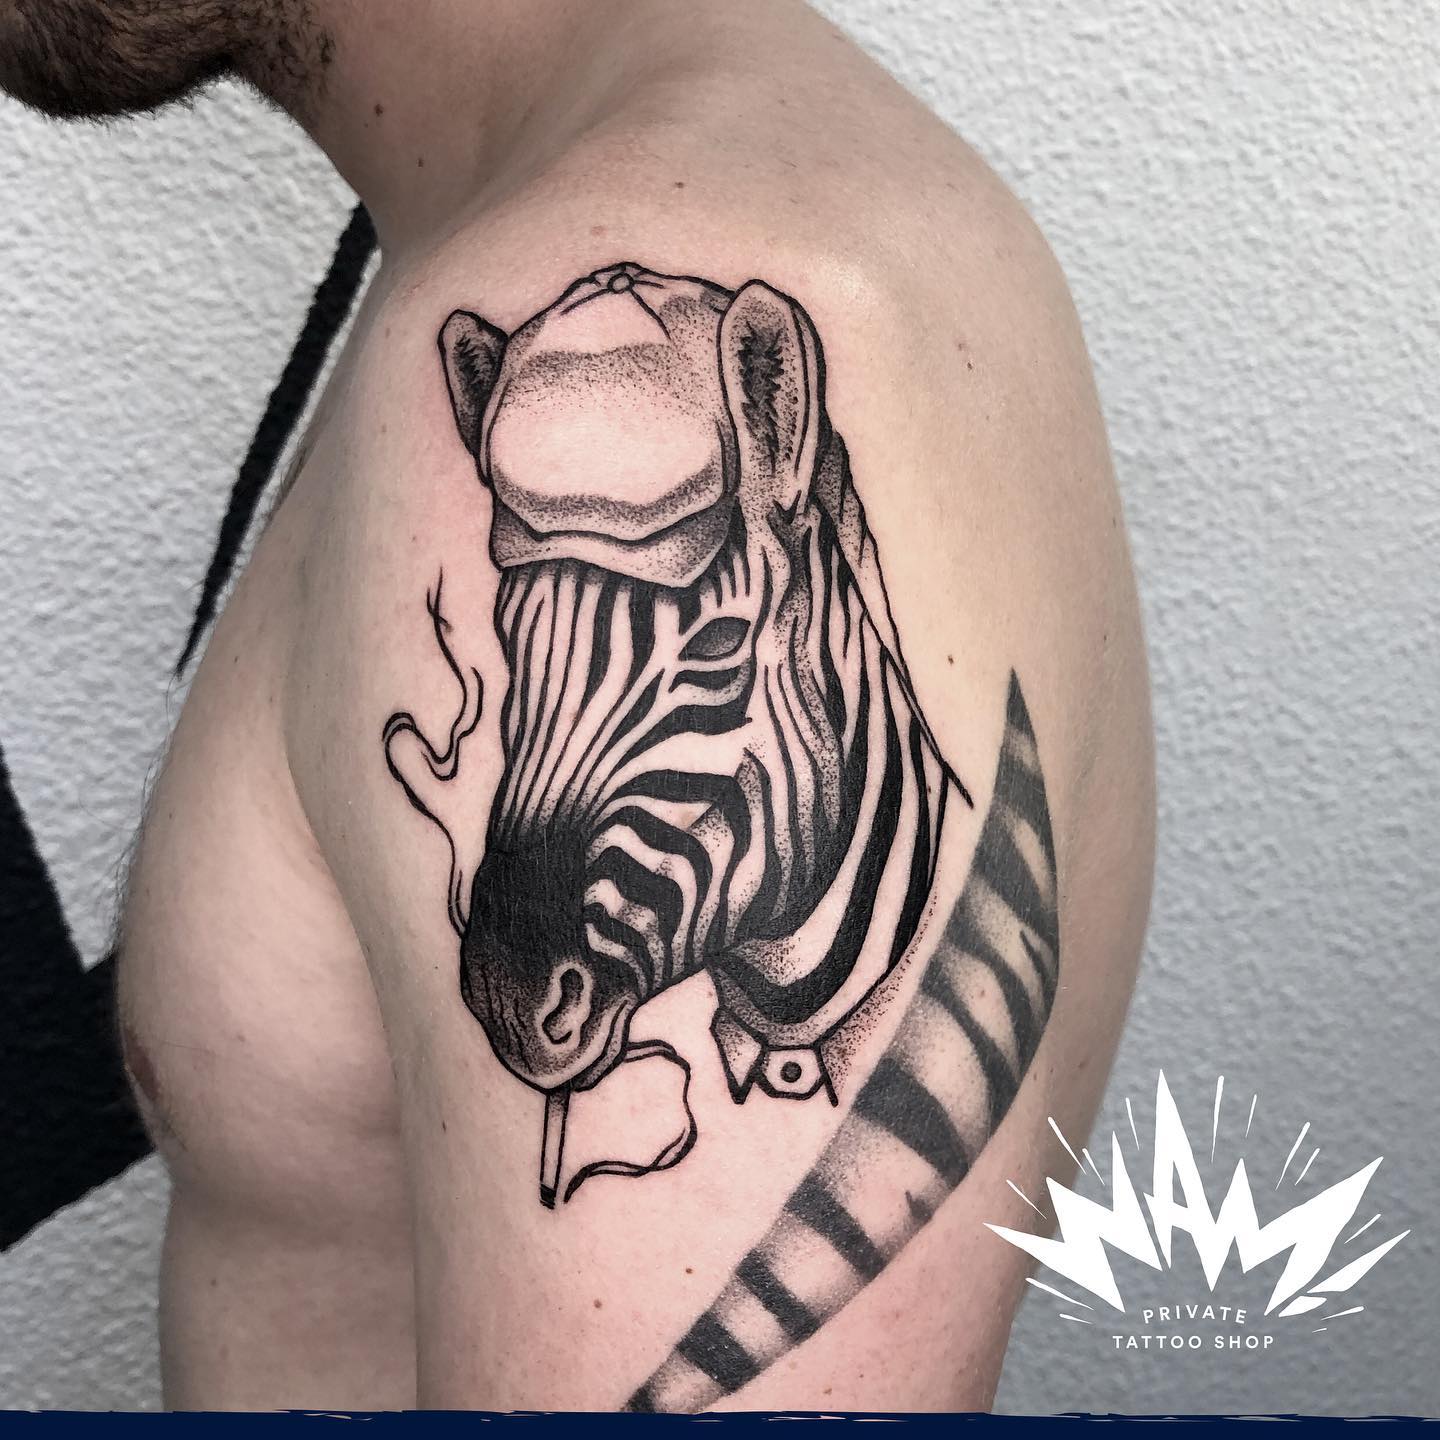 Dot work zebra tattoo design by wam private tattoo shop